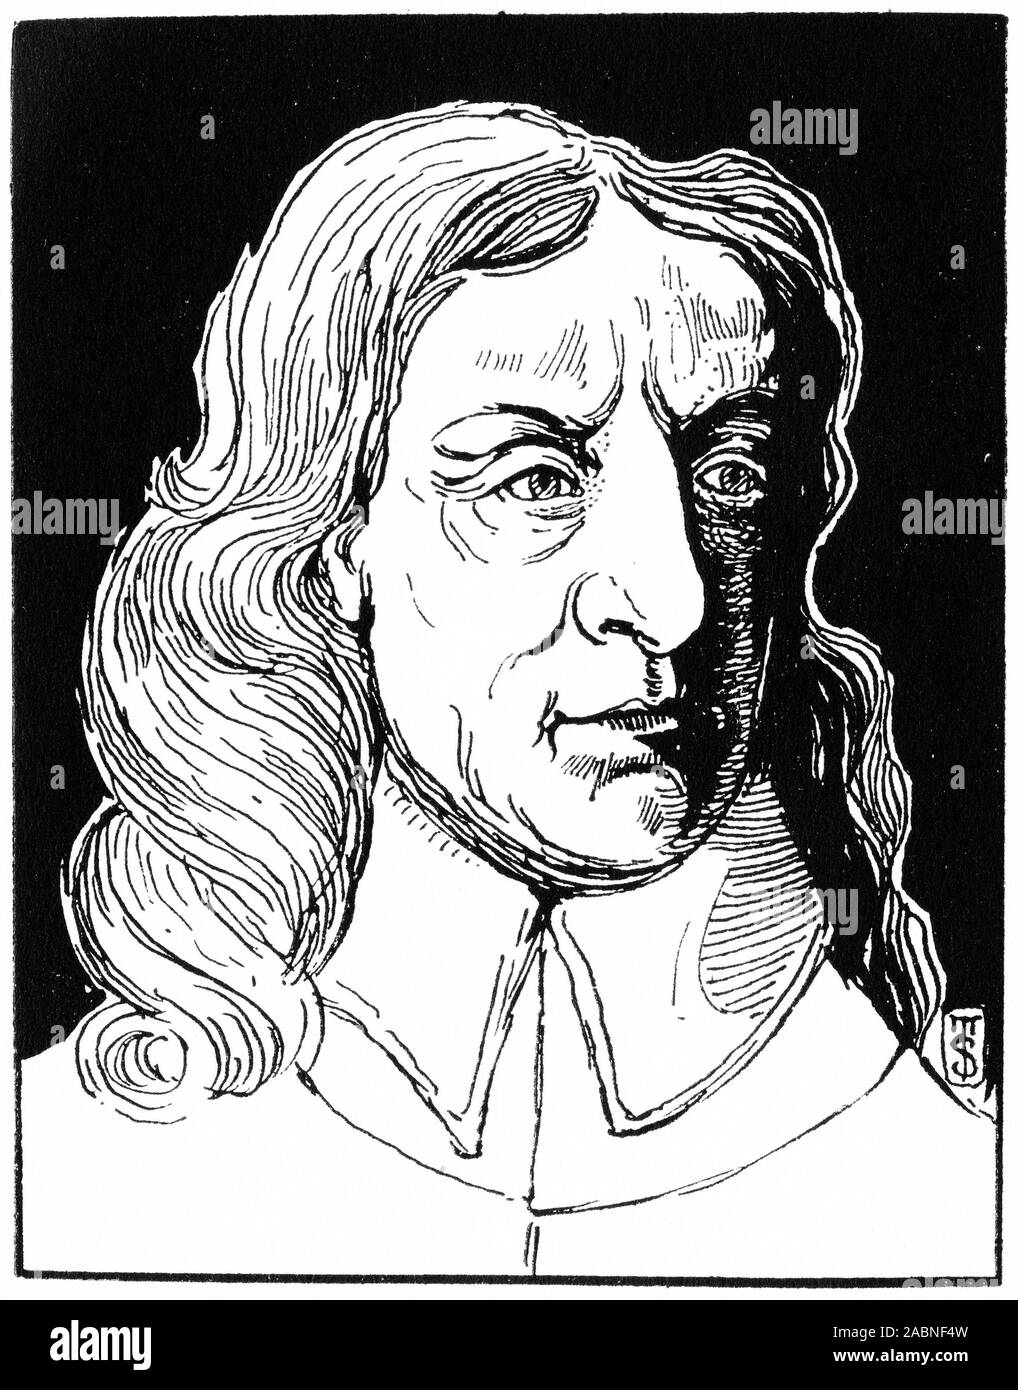 Ritratto inciso di Oliver Cromwell (1599 - 1658) militare inglese e leader politico. Ha servito come signore protettore del Commonwealth di Inghilterra, Scozia e Irlanda dal 1653 fino alla sua morte, in qualita di capo dello stato e capo del governo della nuova repubblica. Foto Stock